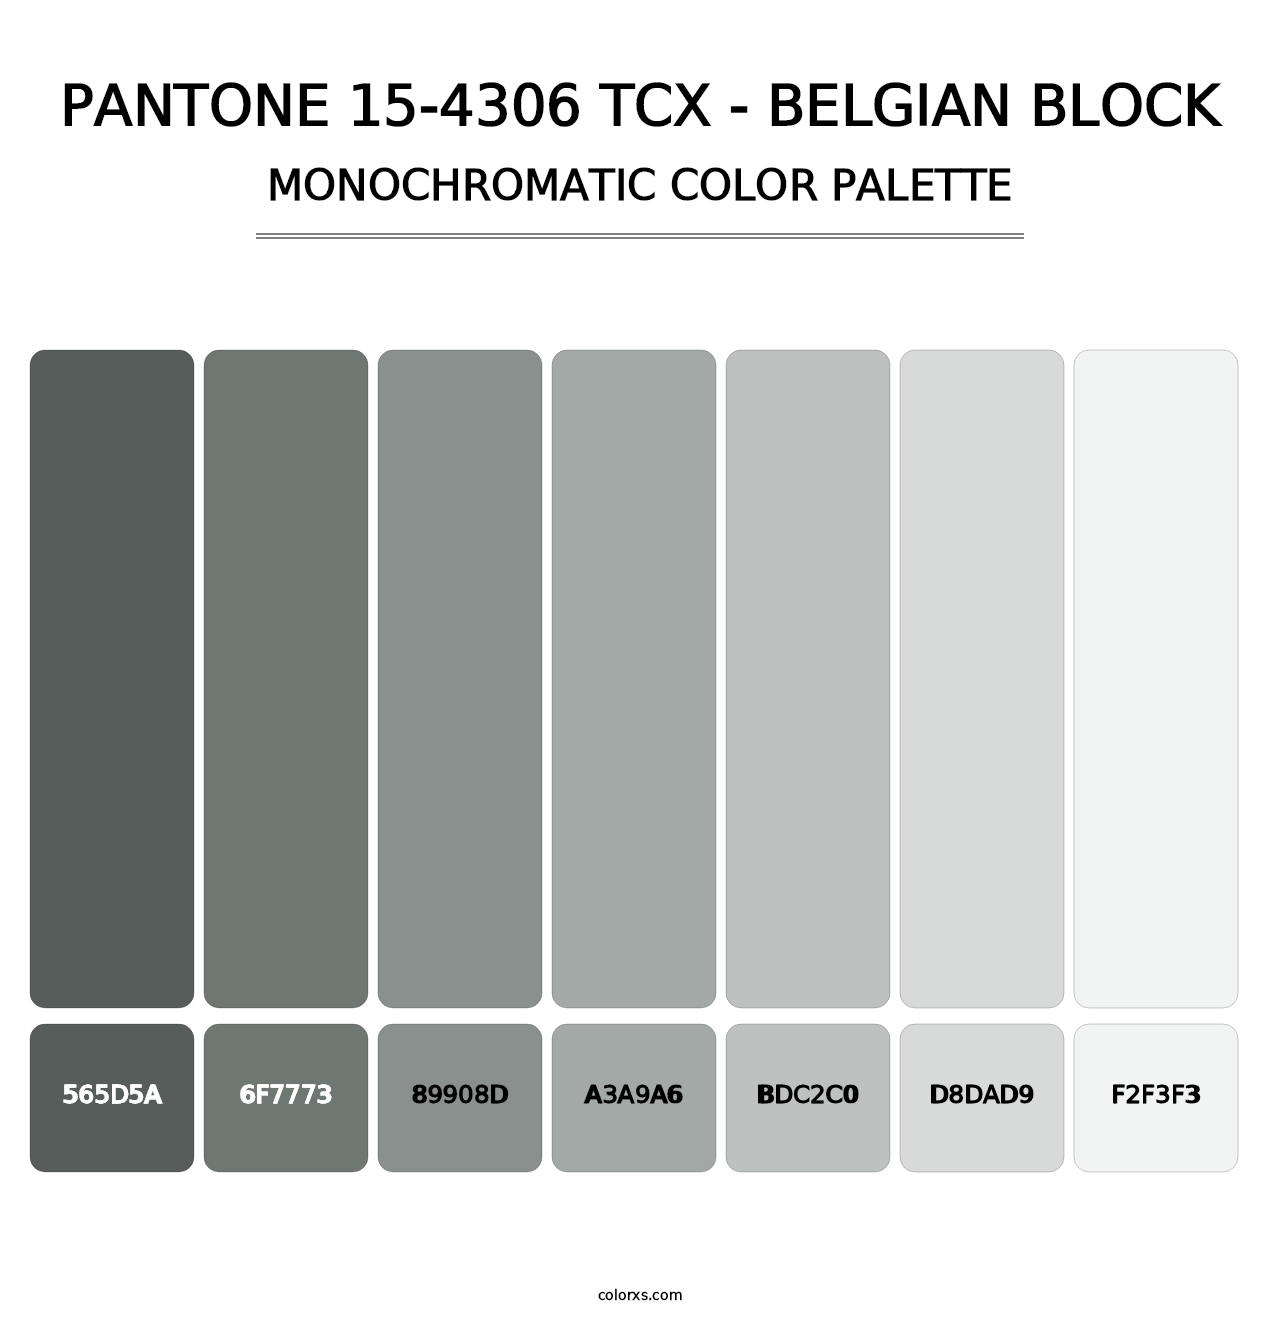 PANTONE 15-4306 TCX - Belgian Block - Monochromatic Color Palette